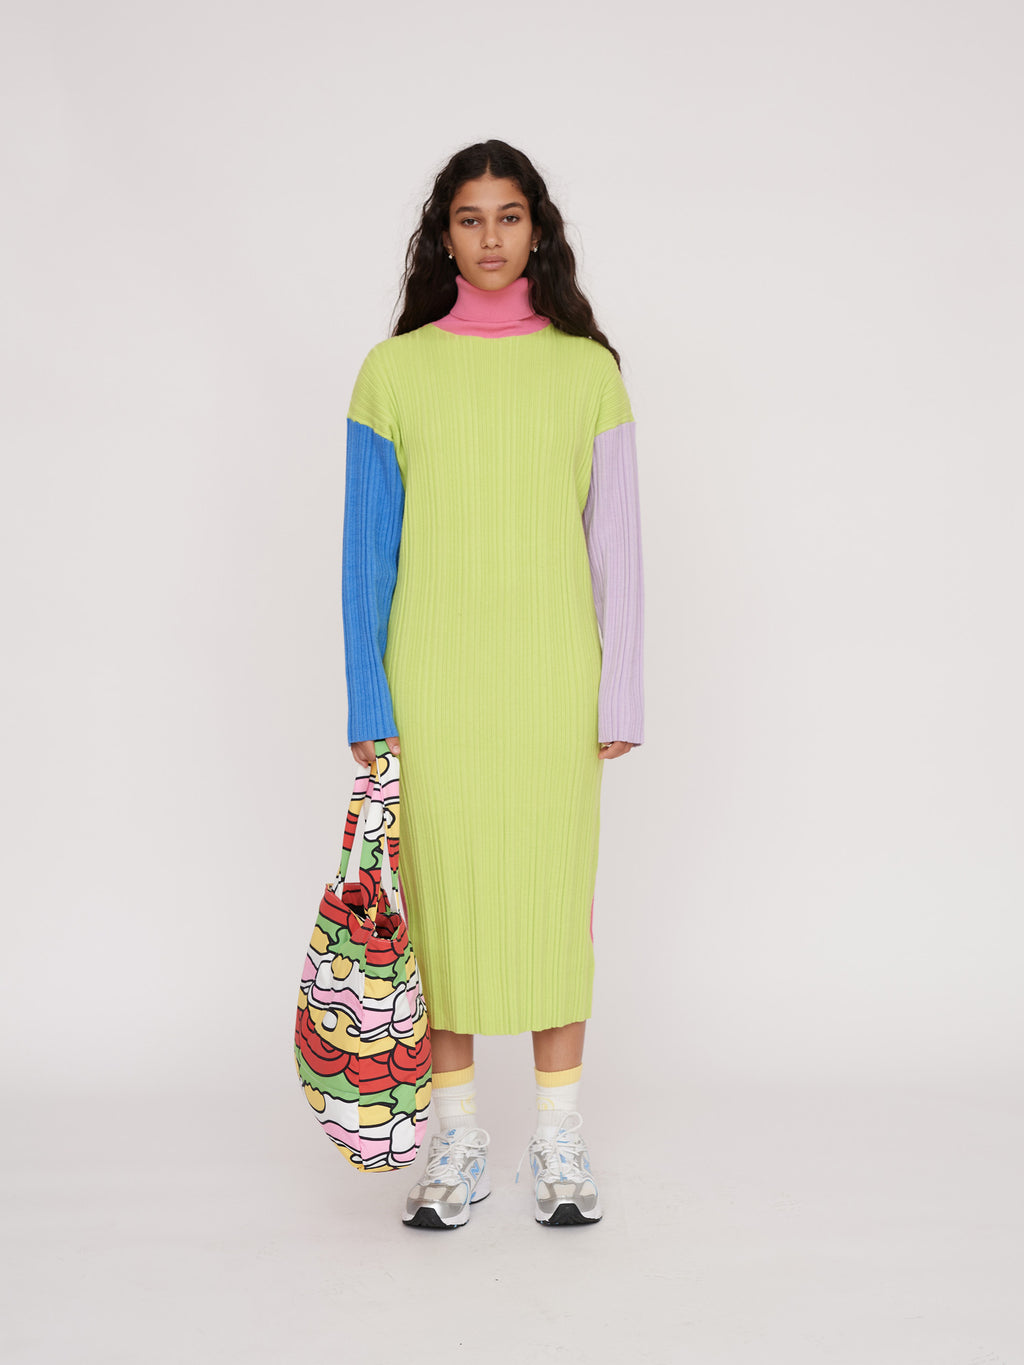 Colour Block Knit Tube Dress